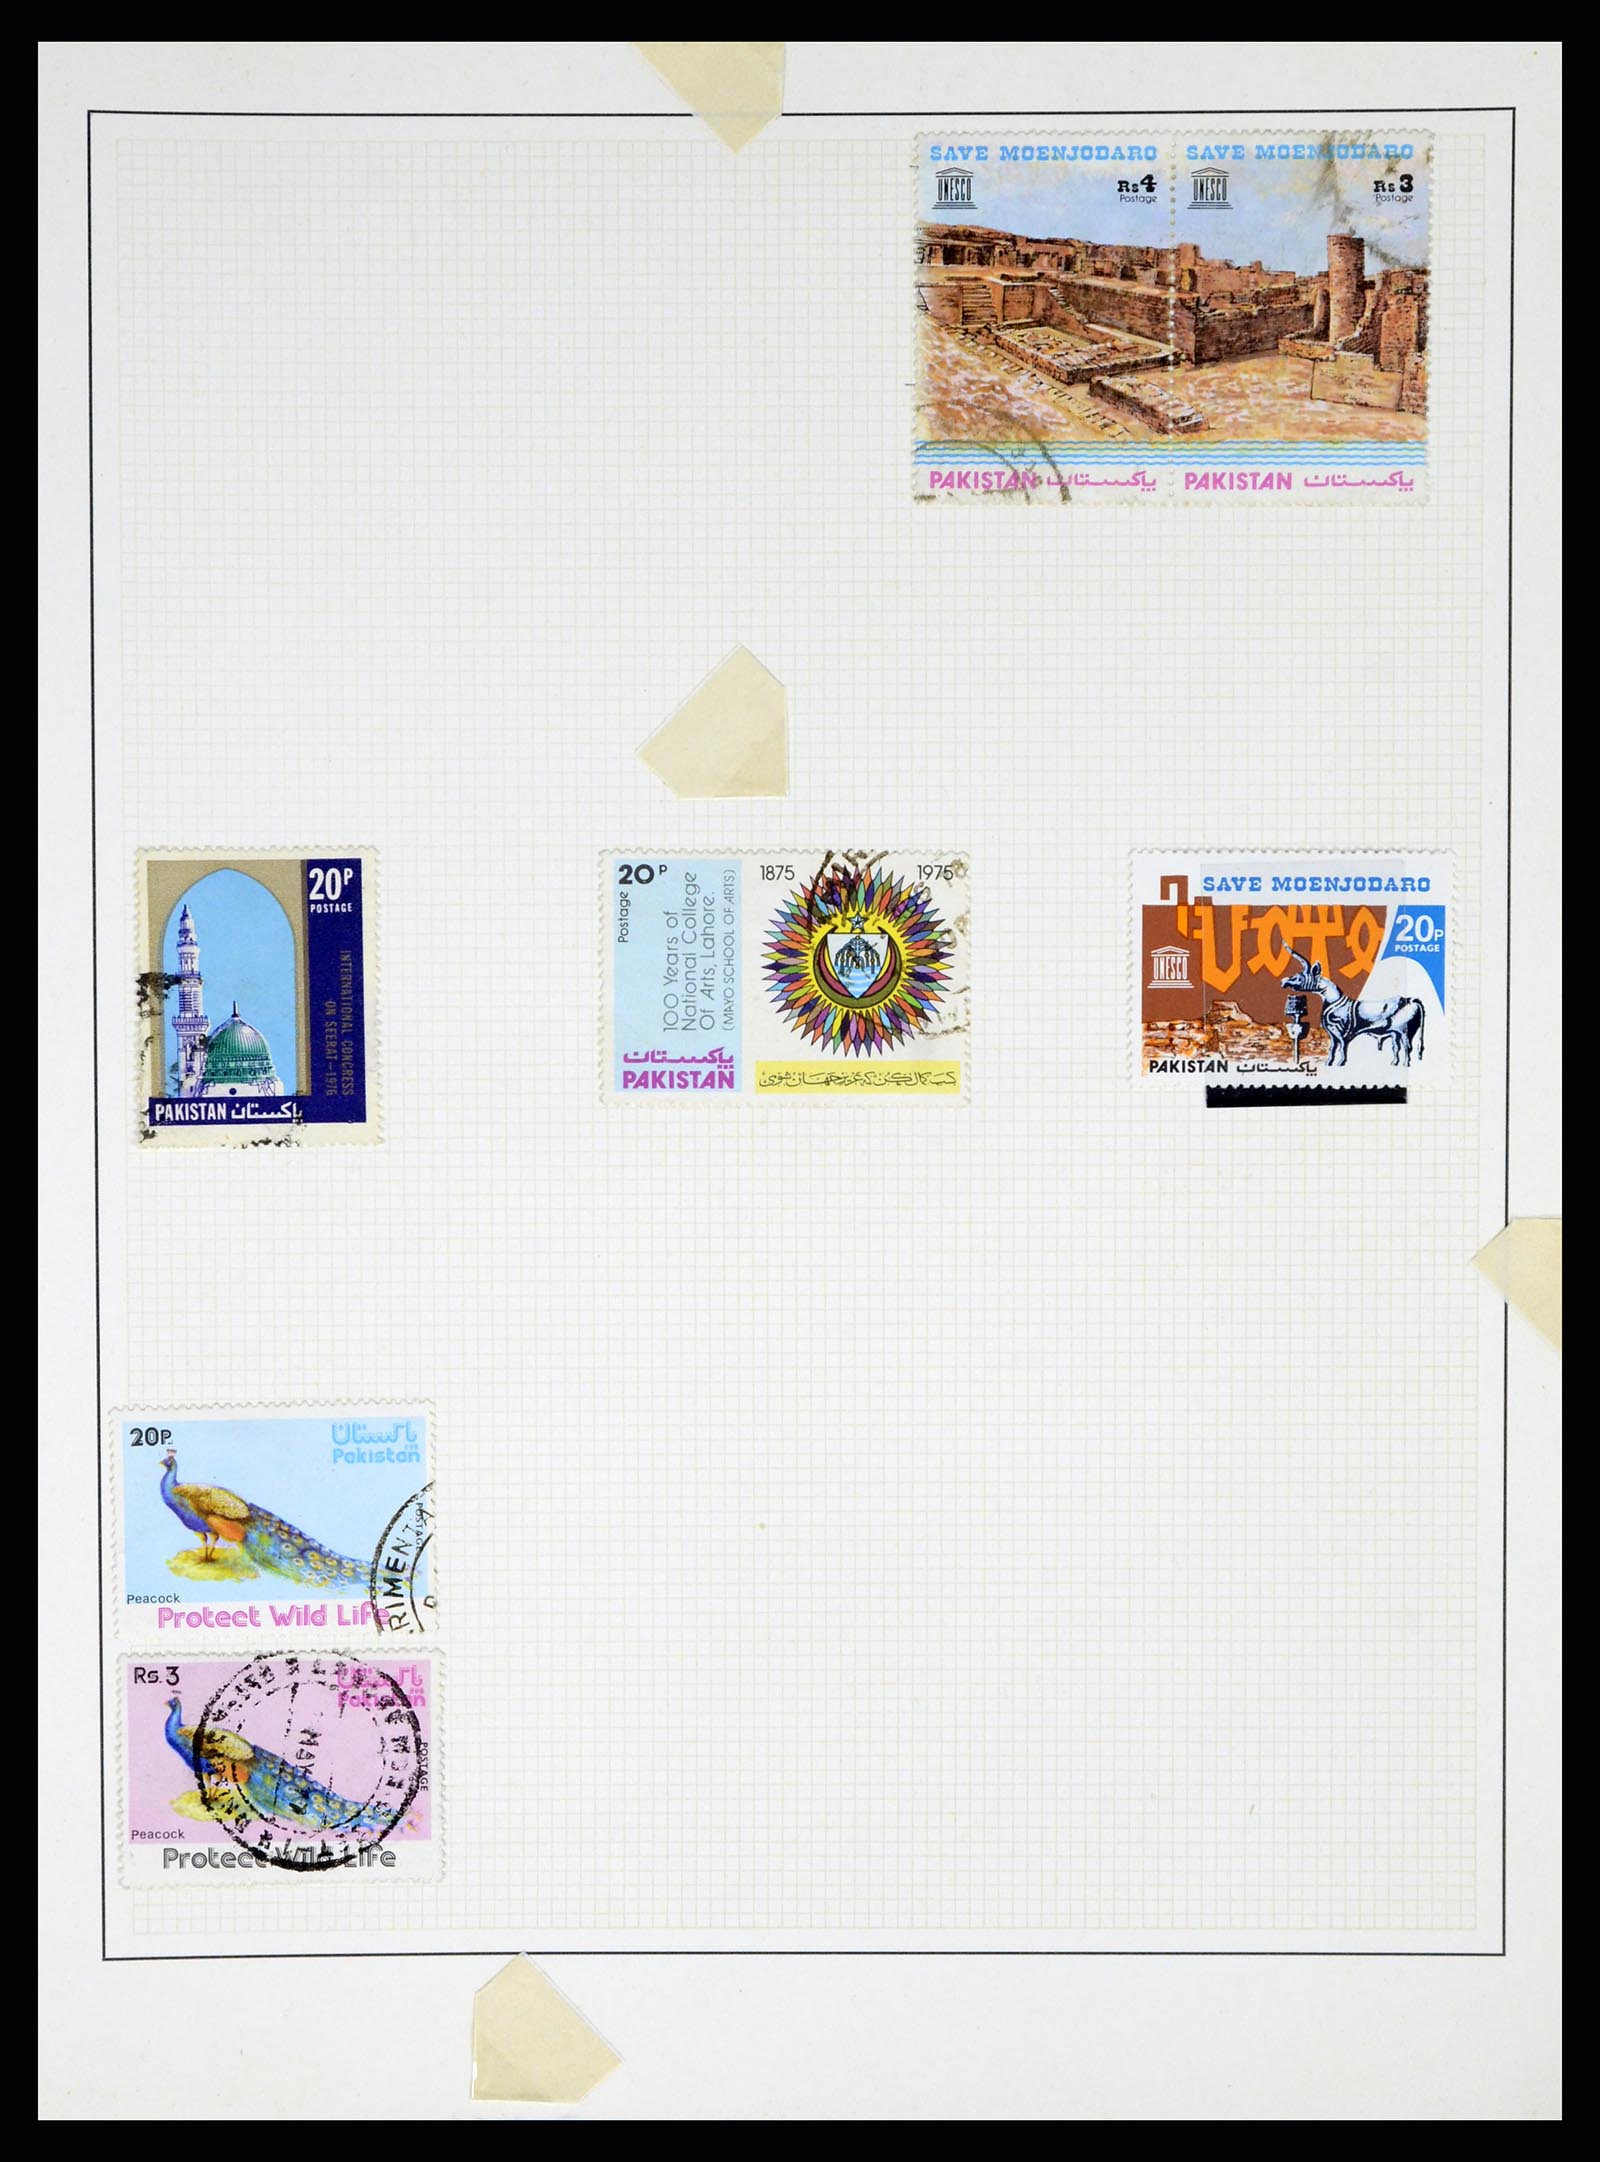 37619 040 - Stamp collection 37619 Pakistan/Bangladesh 1947-2000.